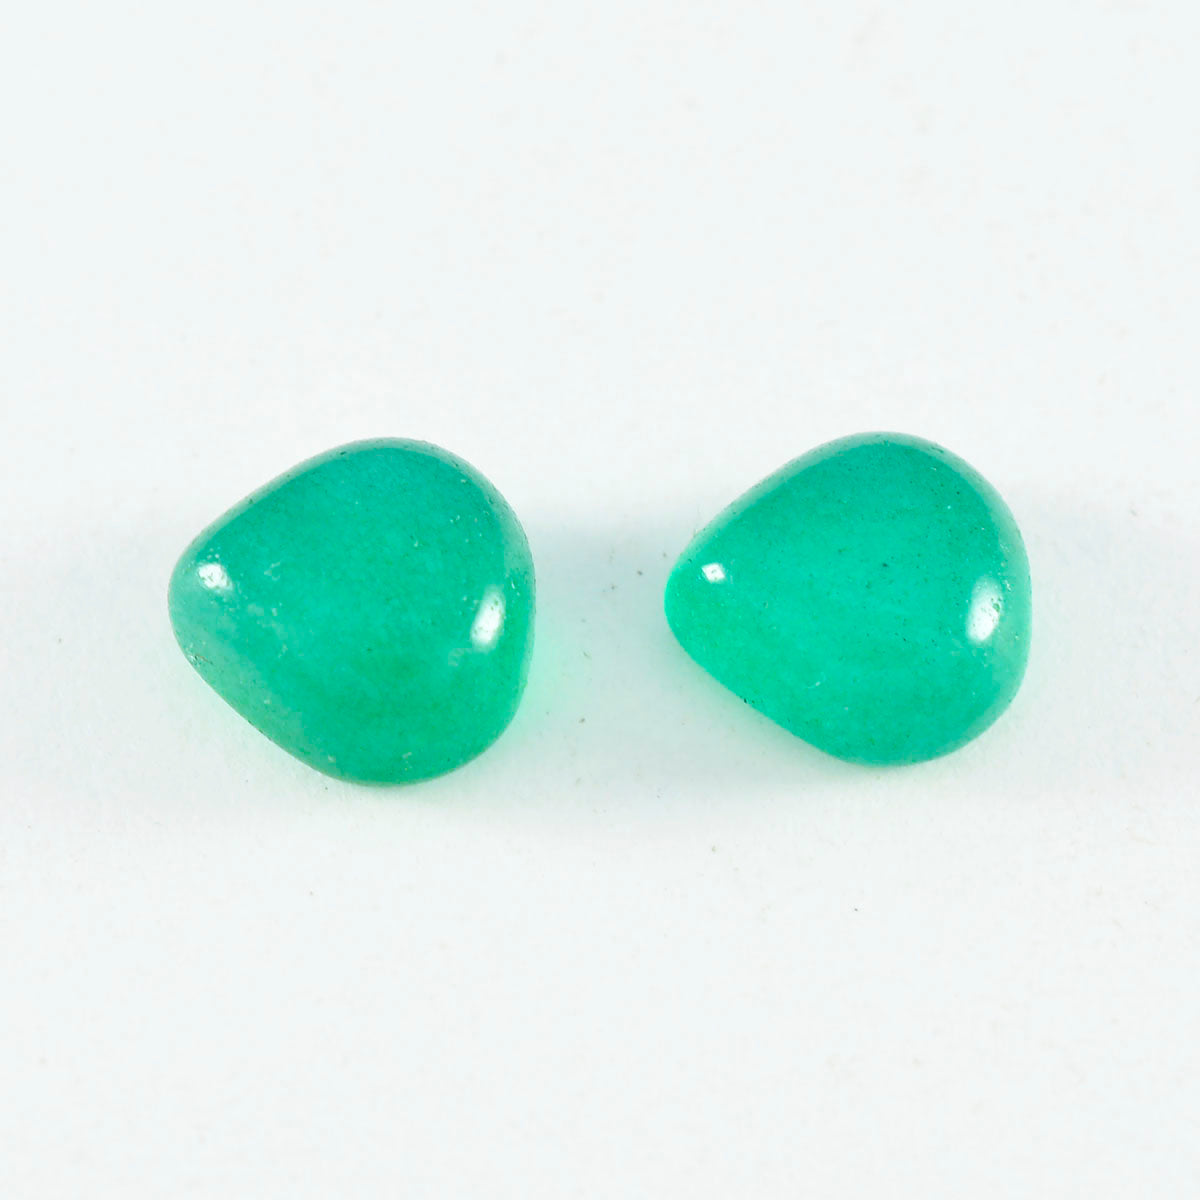 riyogems 1st grön onyx cabochon 8x8 mm hjärtform av hög kvalitet pärla